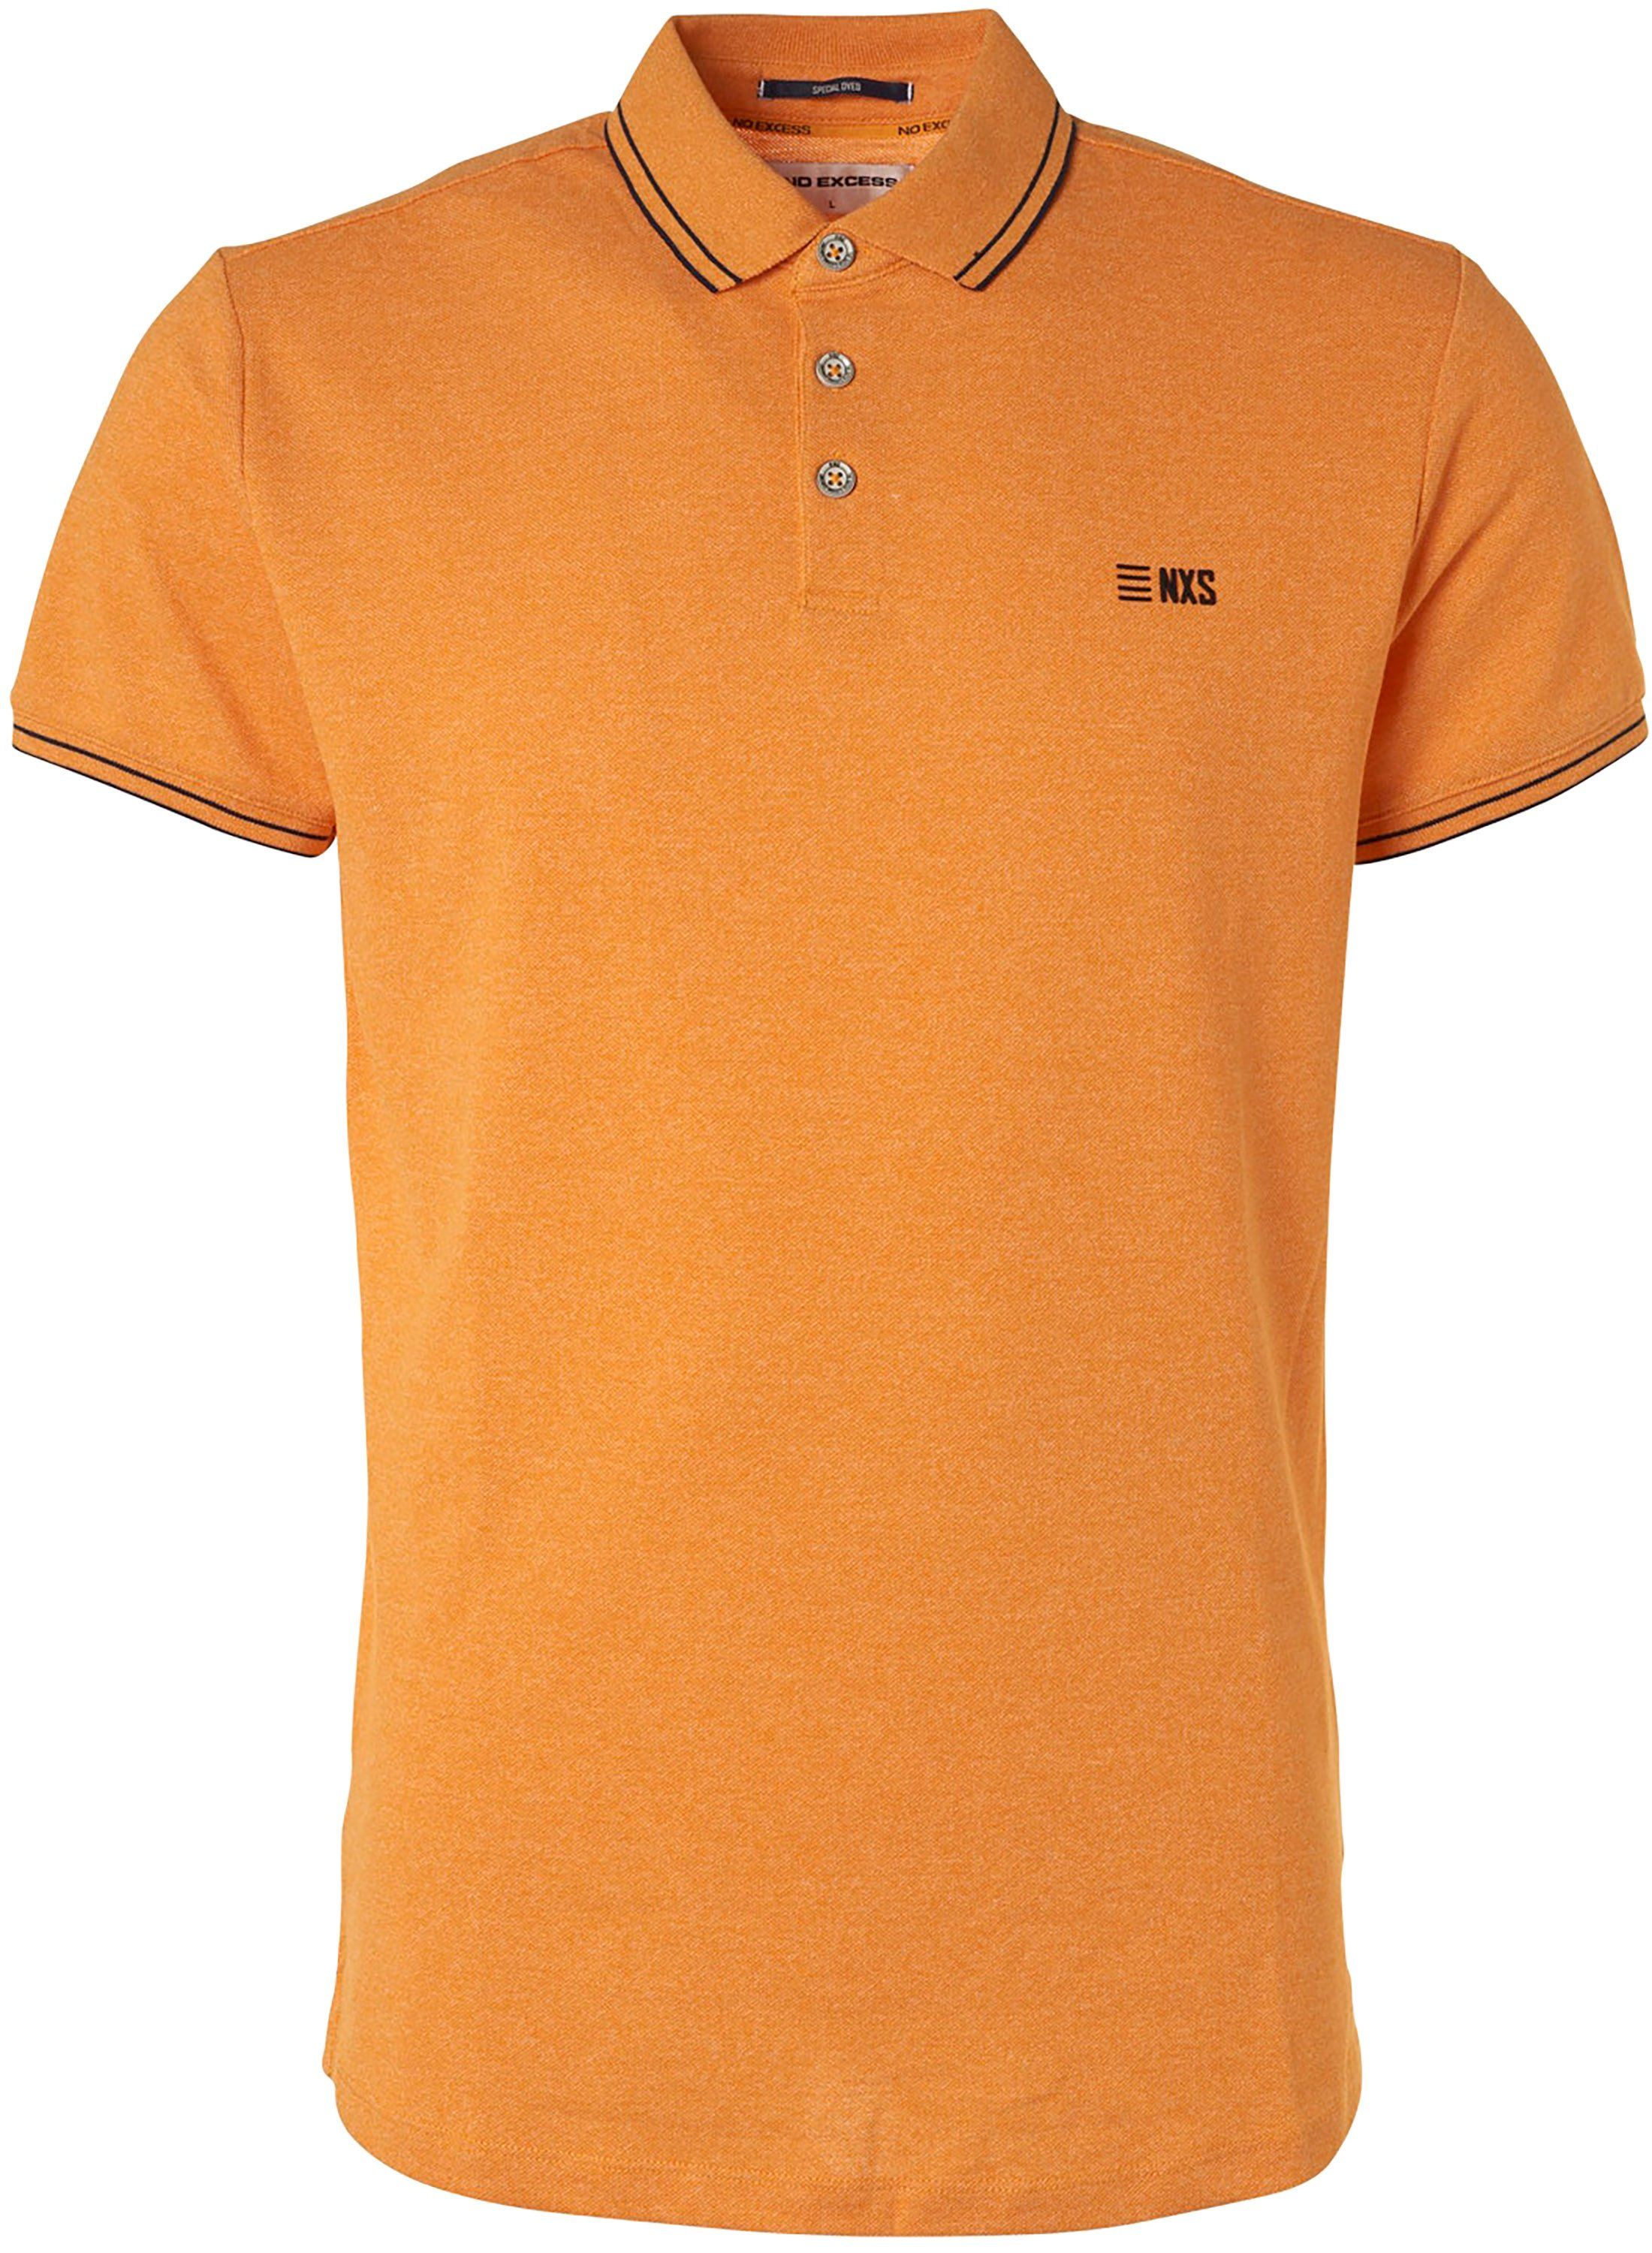 No-Excess Polo Shirt Garment Dye Yellow size 3XL